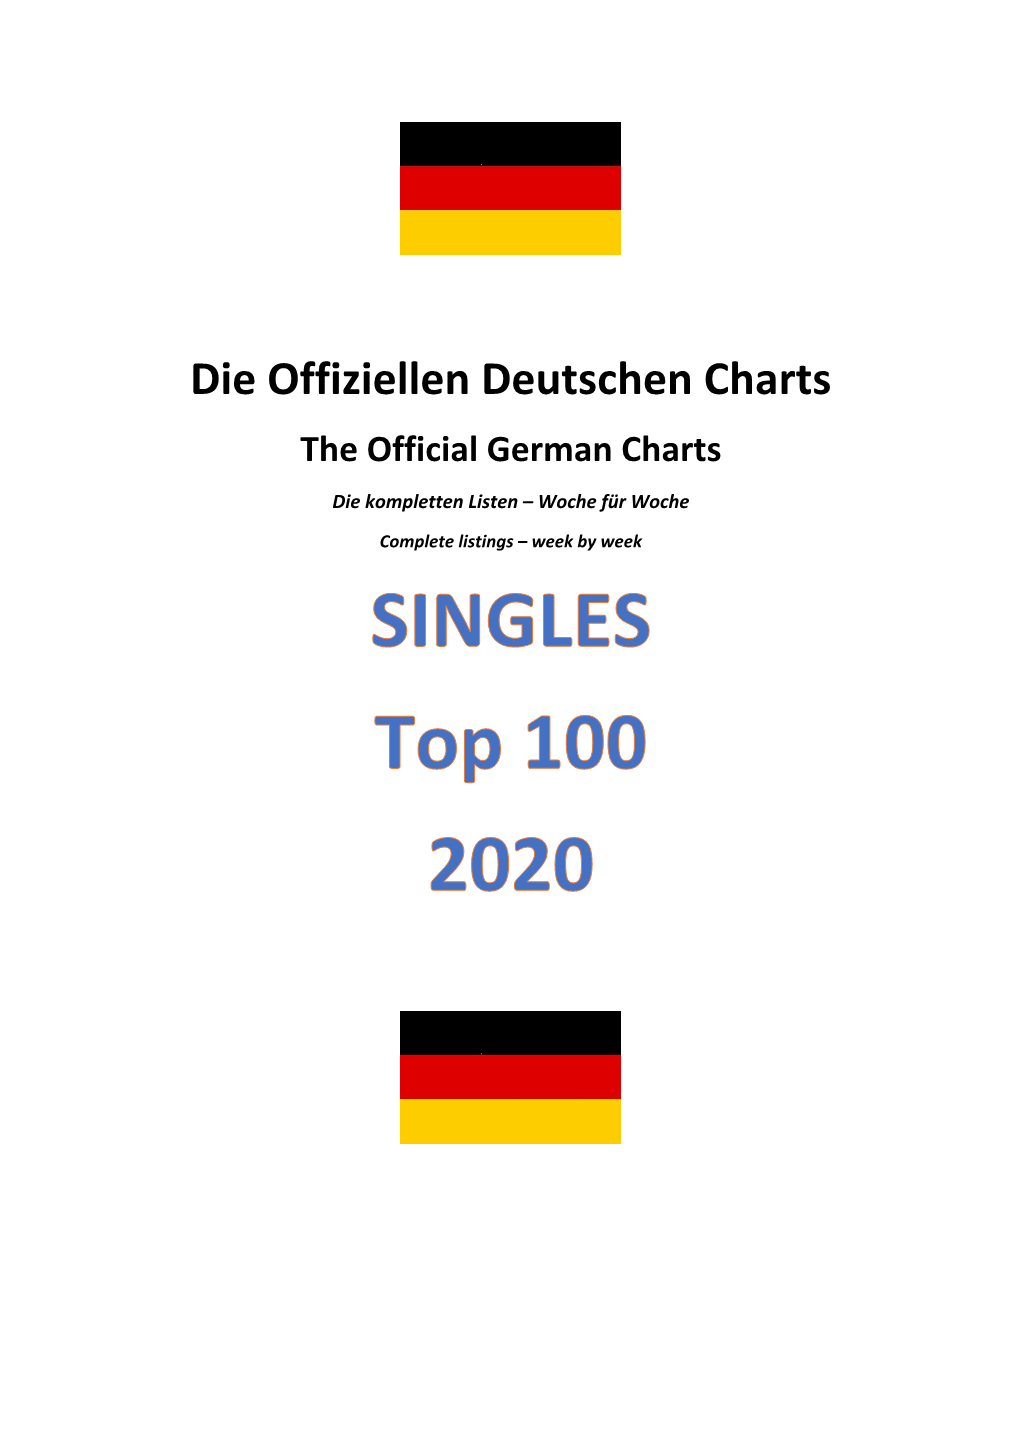 Die Offiziellen Deutschen Charts the Official German Charts